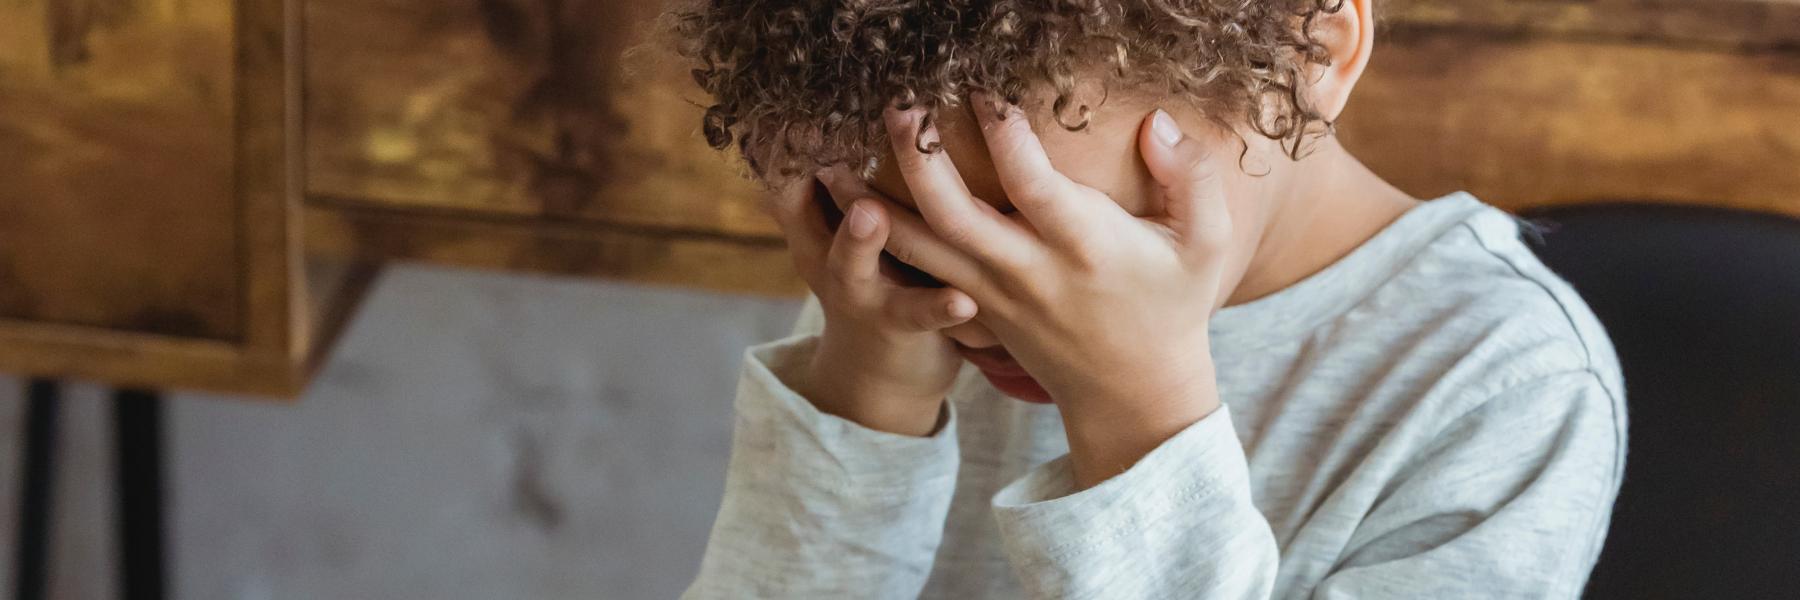 أعراض القلق عند الأطفال..كيف يمكن التعرف عليها؟